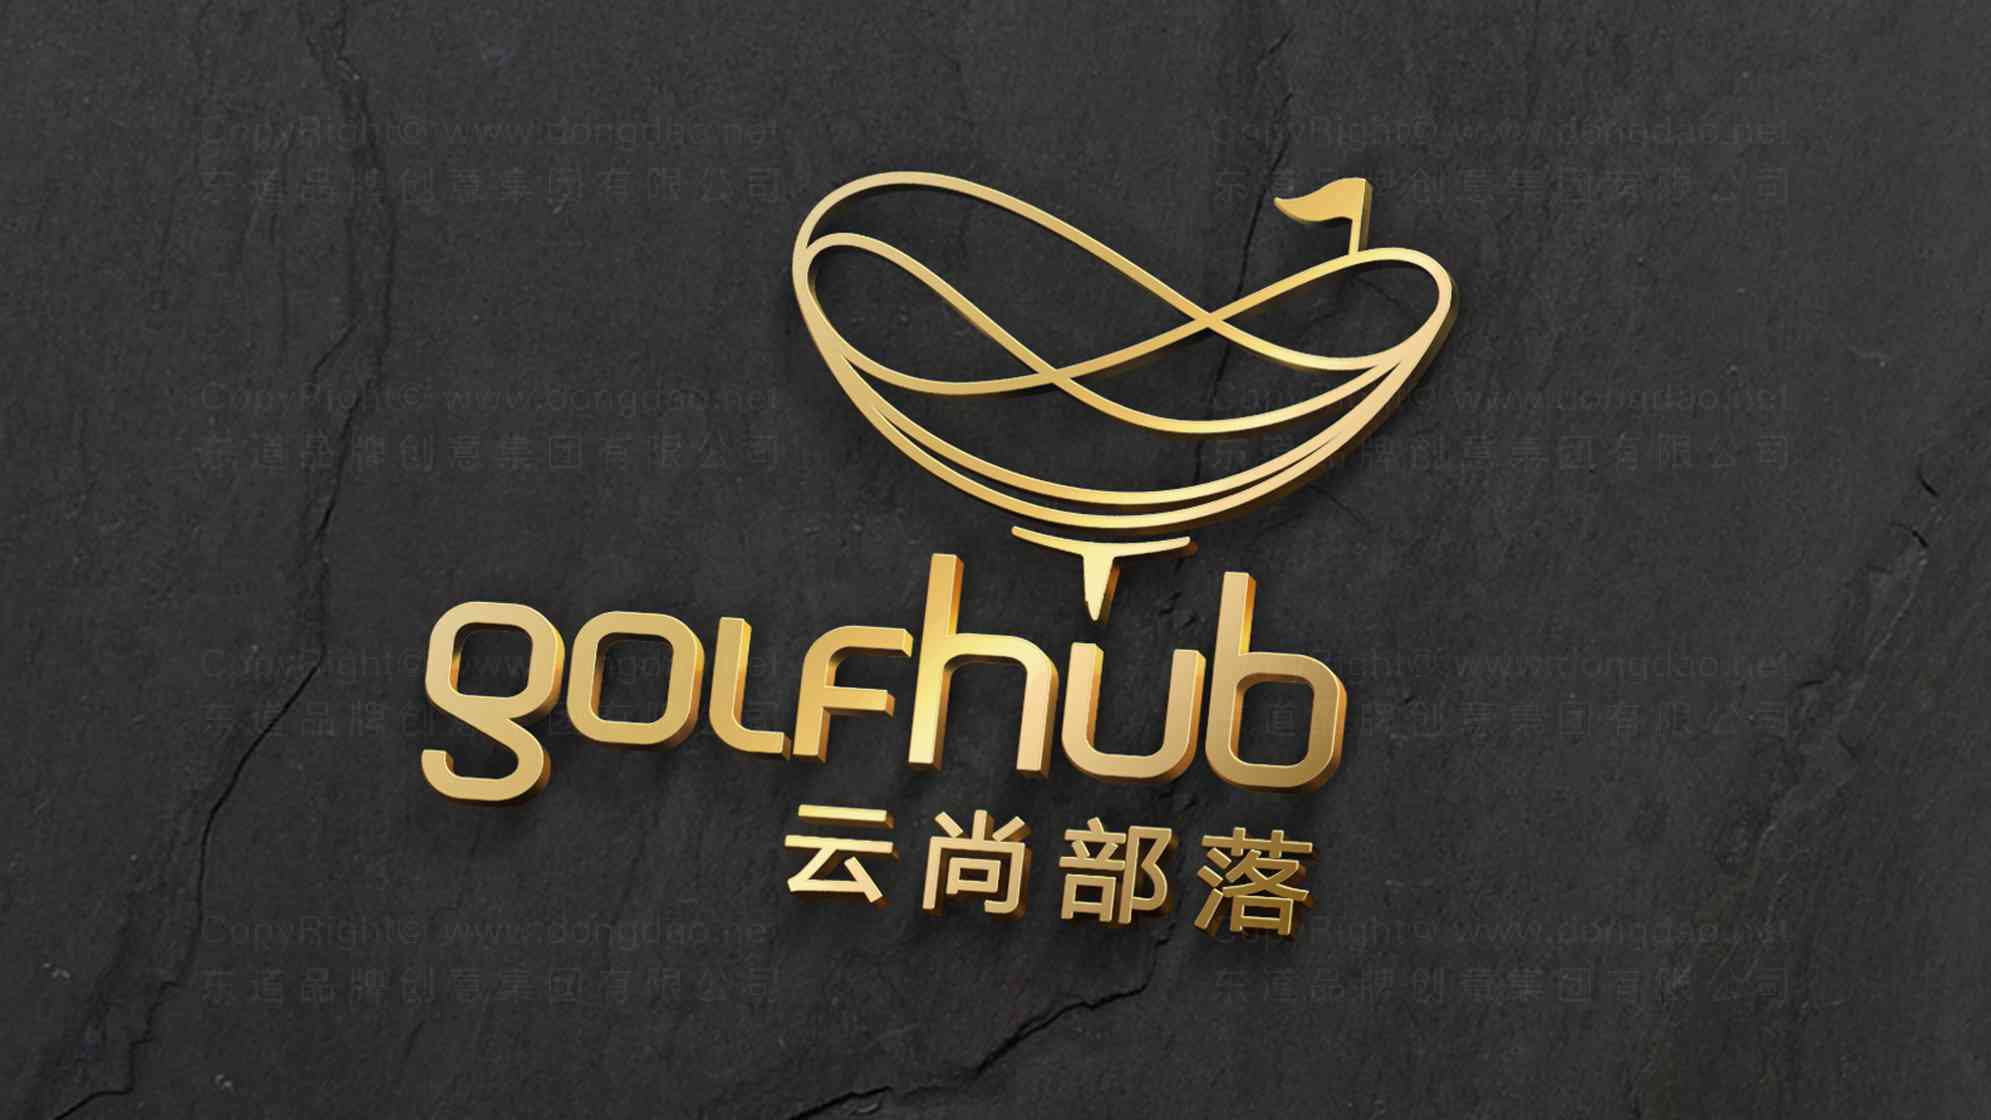 云尚部落高尔夫体育品牌logo设计图片素材